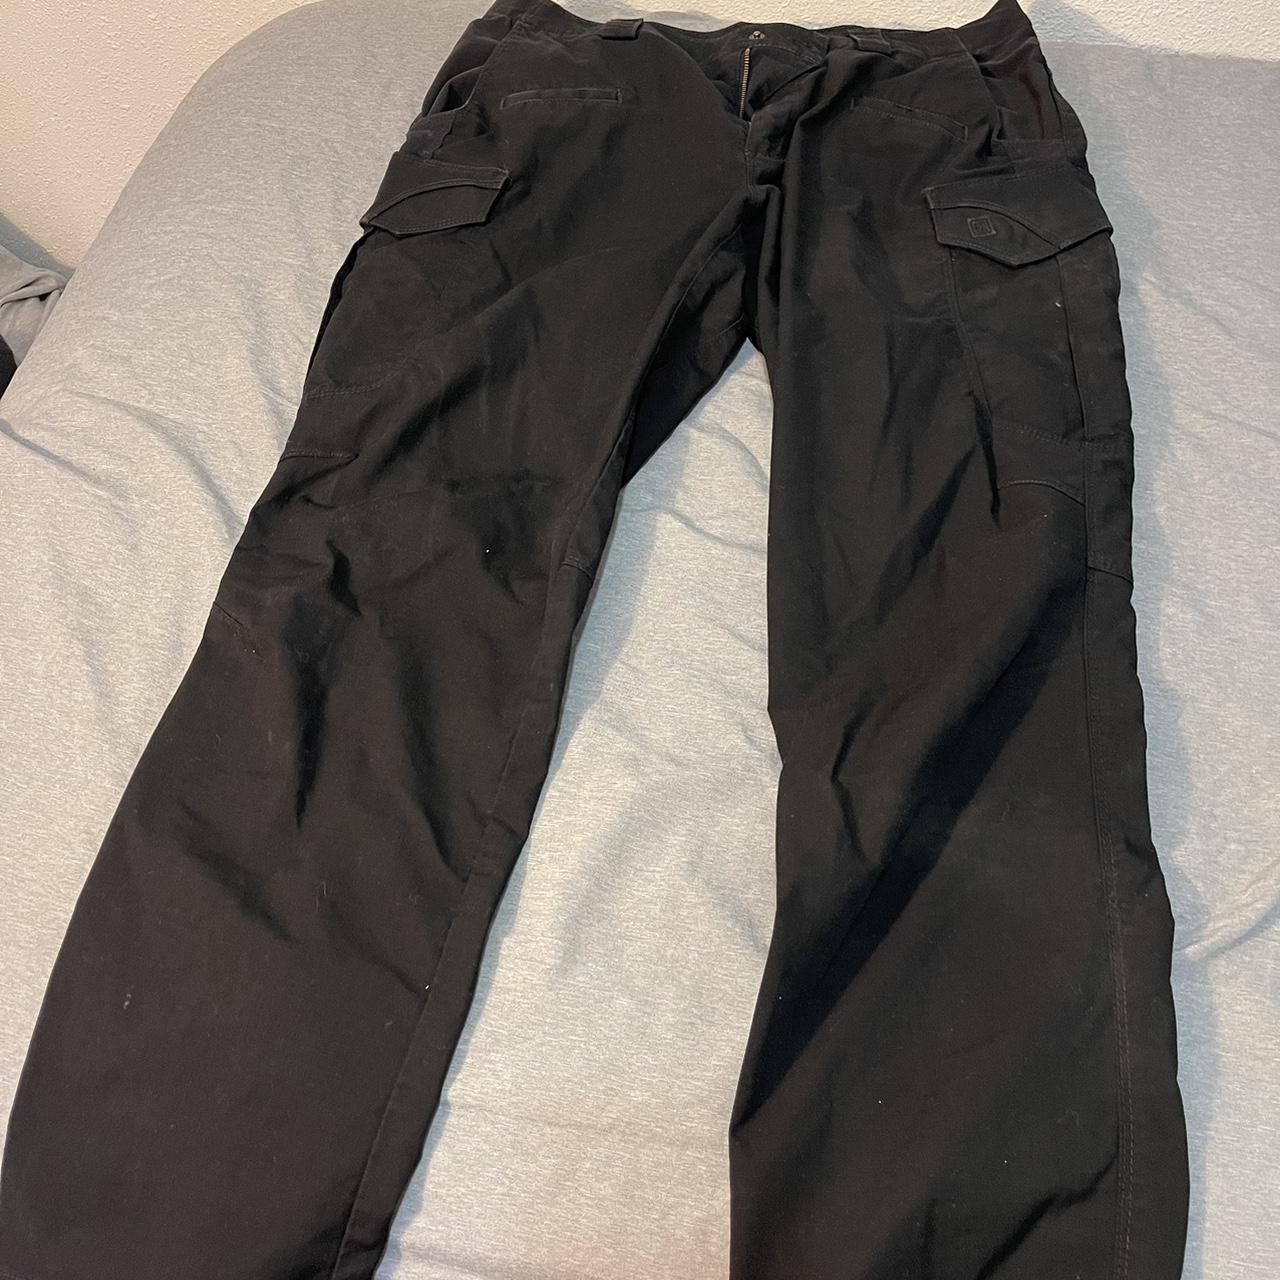 5.11 tactical pants Size34x30 - Depop